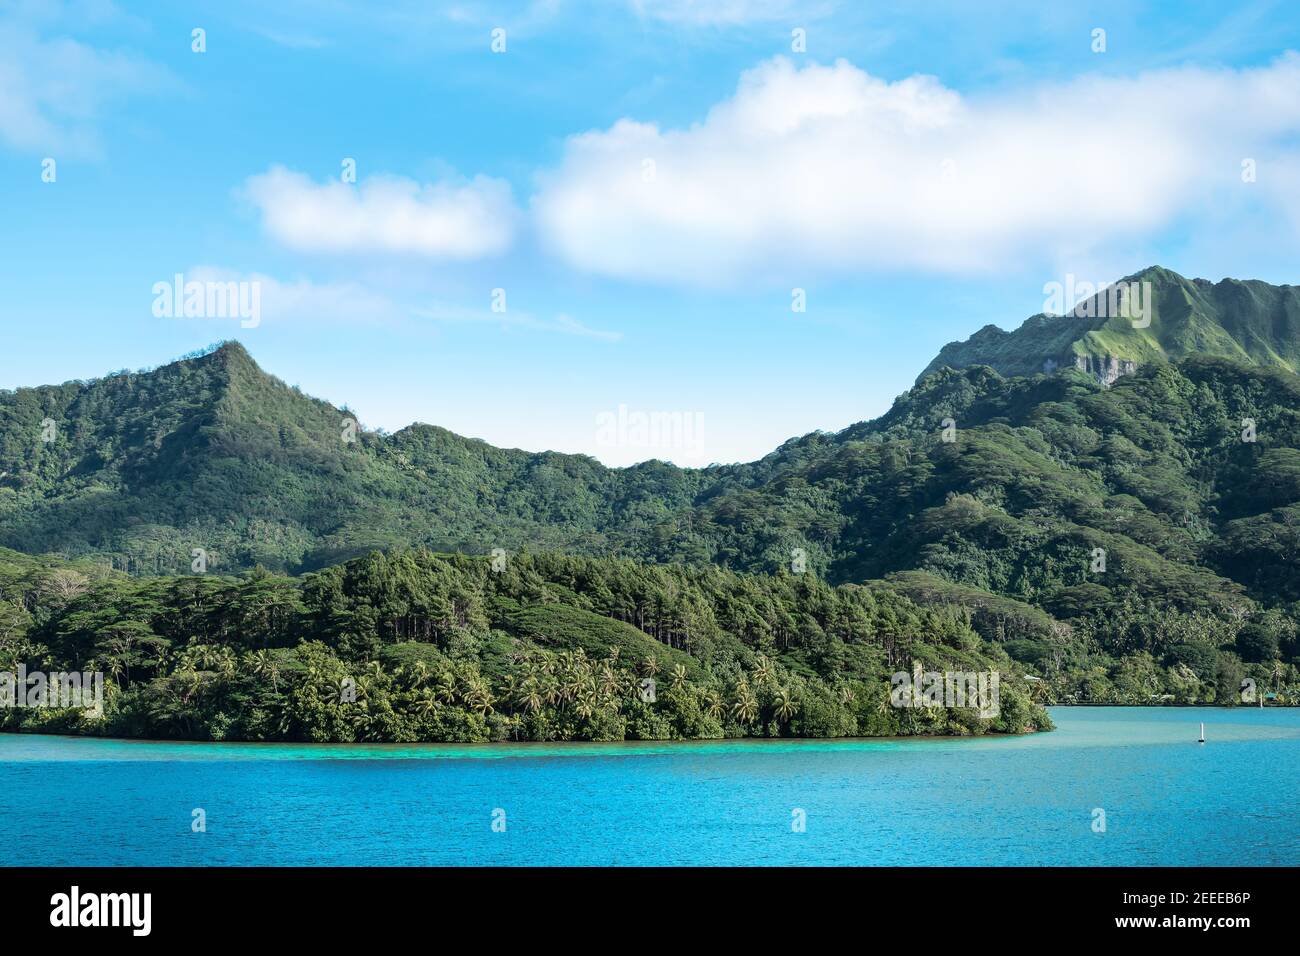 Splendido paesaggio montano con il monte Turi sull'isola di Huahine, Polinesia francese. Foto Stock